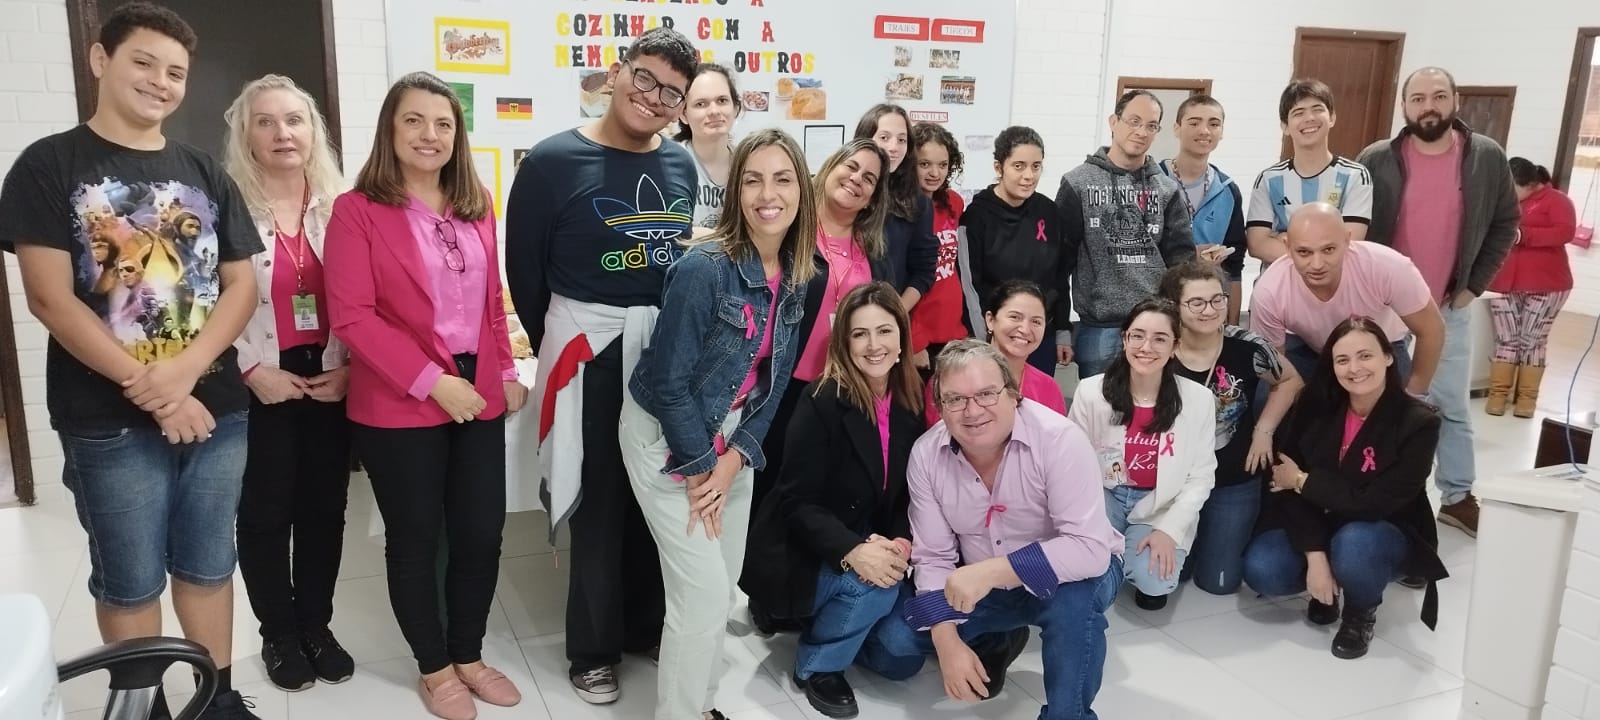 Um grupo de 18 pessoas posam para uma foto em alusão ao outubro rosa. Na foto há professores e alunos, a maioria vestindo blusas rosas em alusão a campanha